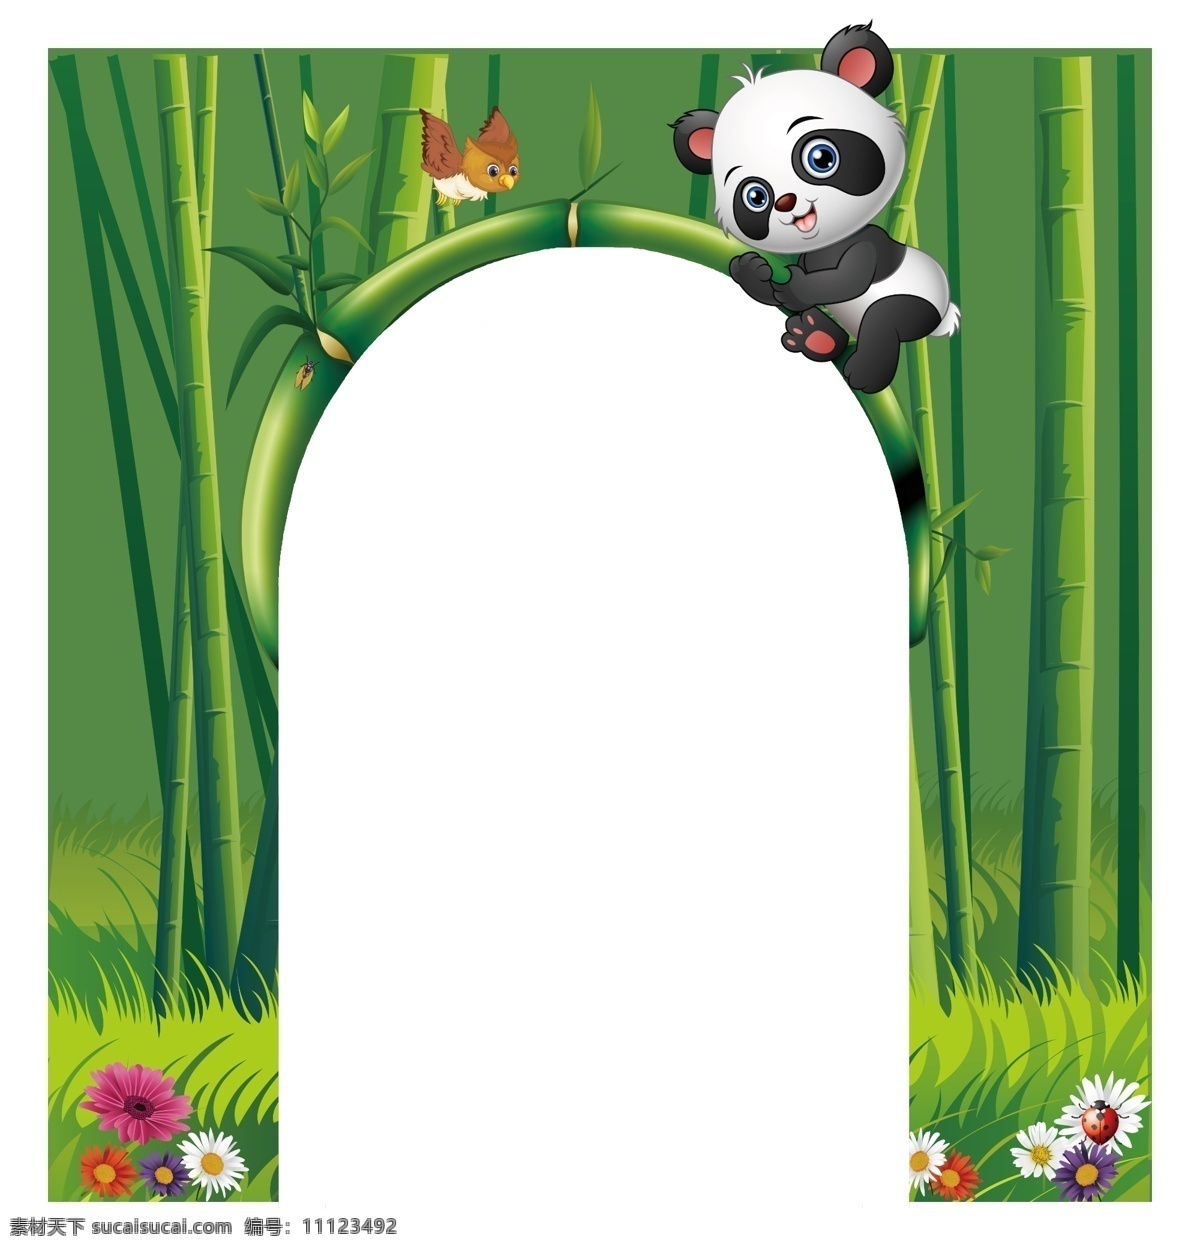 熊猫门183 熊猫 门形 3d 竹子 花朵 小鸟 蝉 绿色 草地 动漫动画 动漫人物